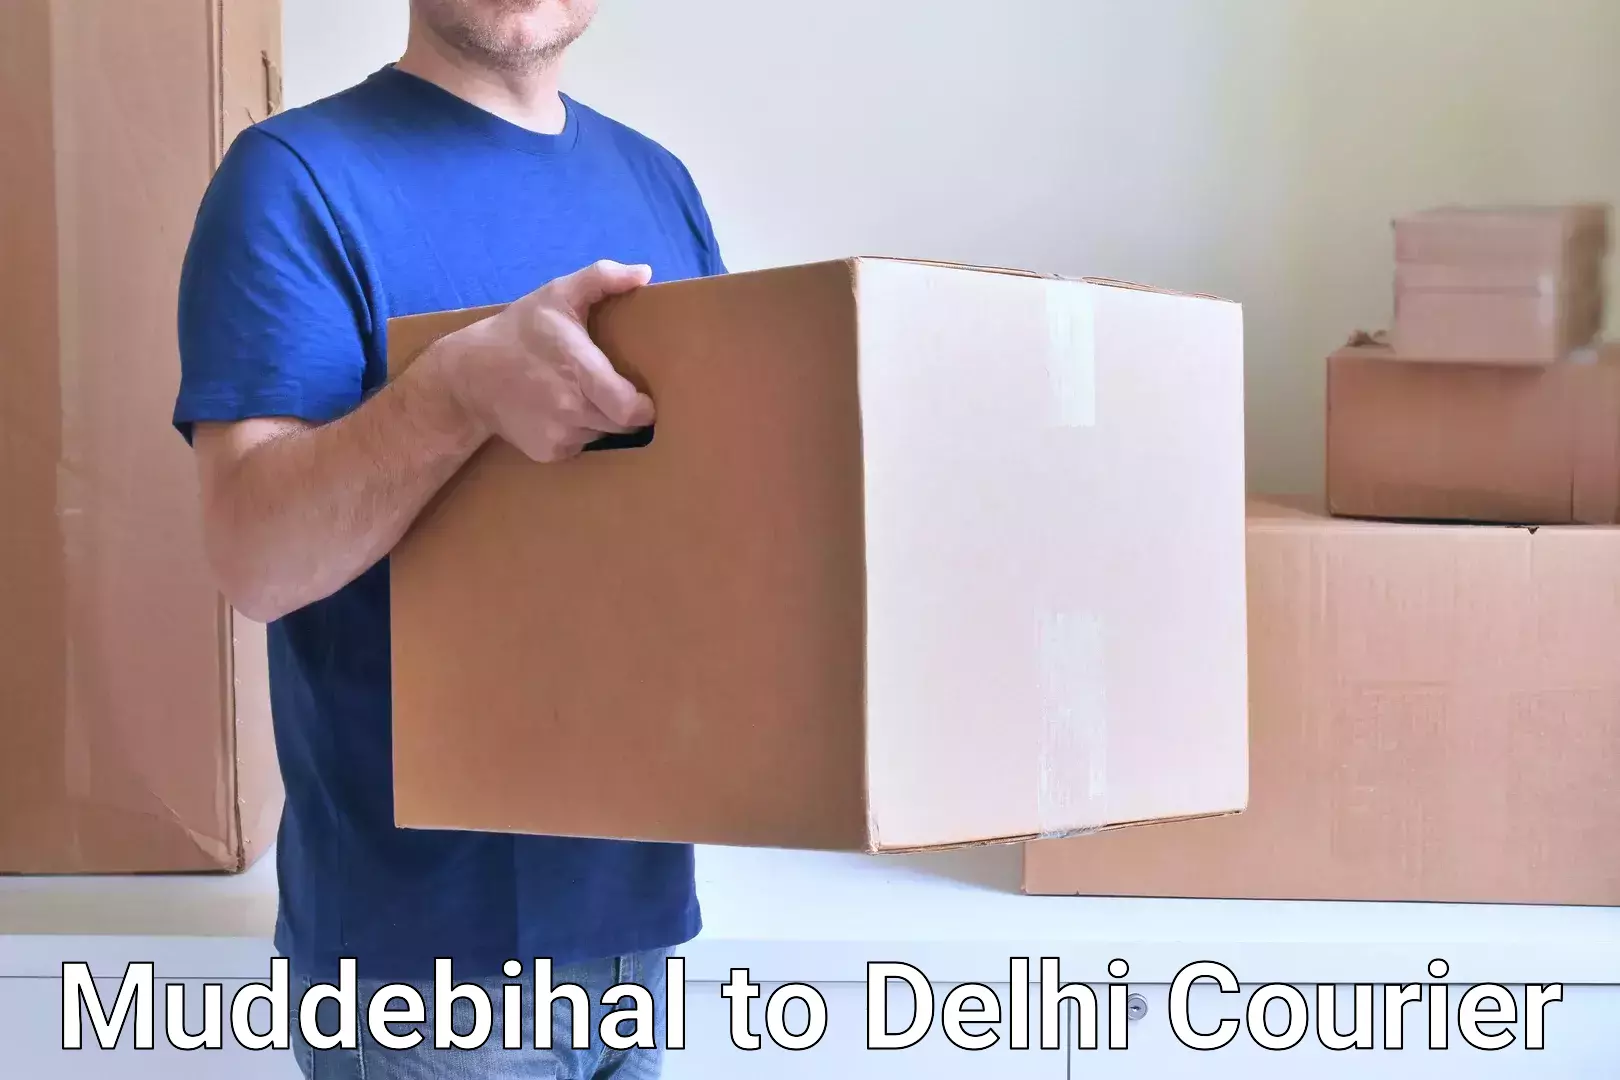 Full-service courier options in Muddebihal to Ashok Vihar